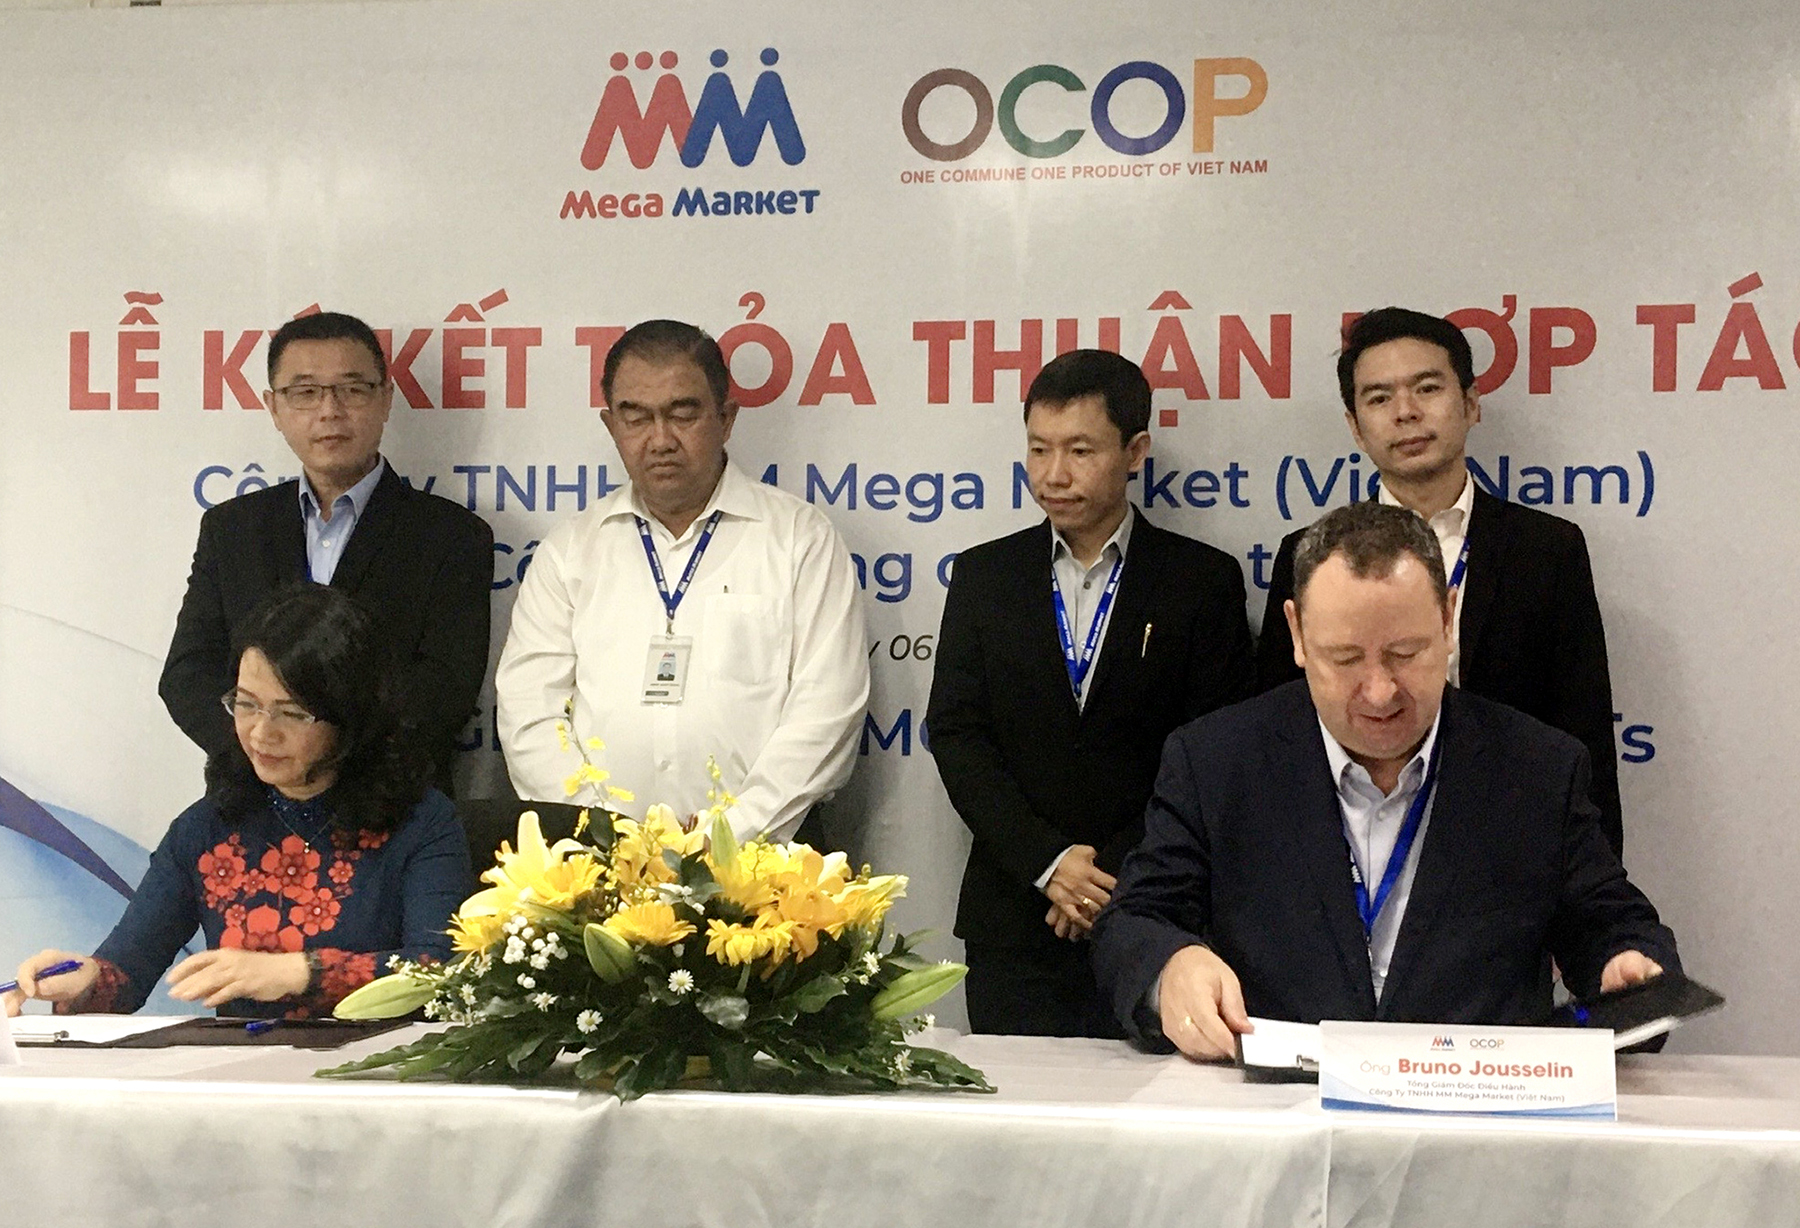 Bà Vũ Bích Hảo, Phó Giám đốc Sở Công thương và ông Bruno Jousselin, Tổng Giám đốc Điều hành Công ty TNHH MM Mega Market (Việt Nam) ký kết biên bản ghi nhớ.